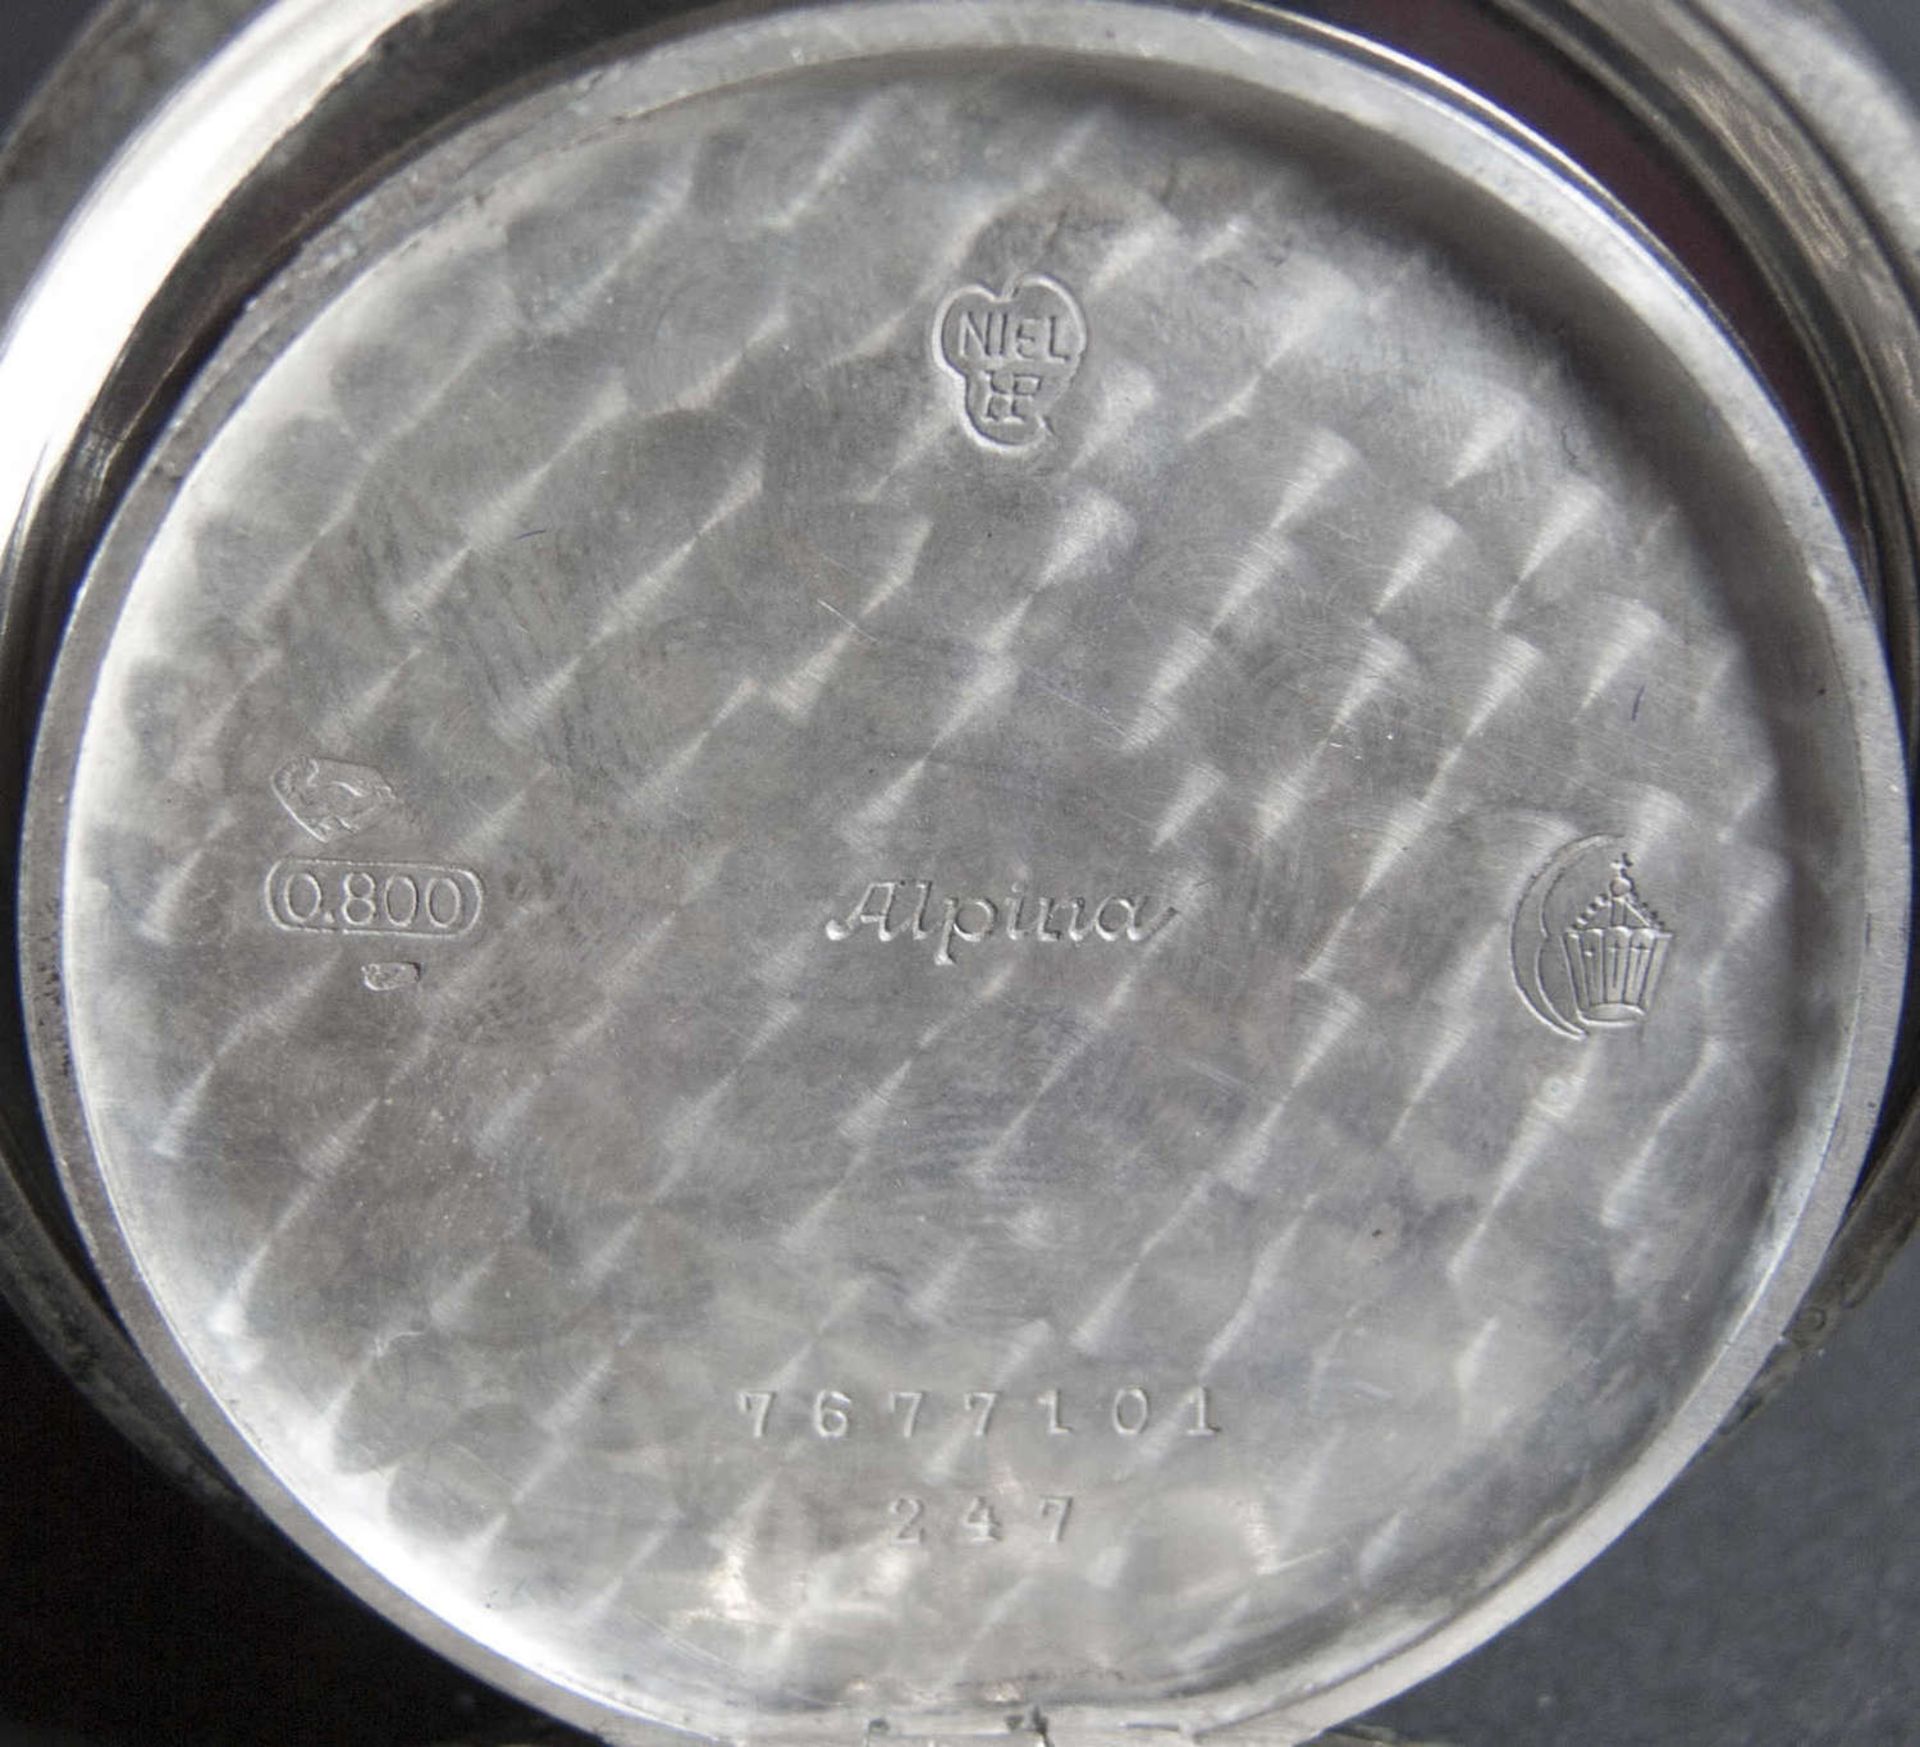 Alpina Taschenuhr, Silber 800. Nr. 7677101, Werk: #327.Arabische Ziffern, Kleine Sekund. Gehäuse - Bild 4 aus 5